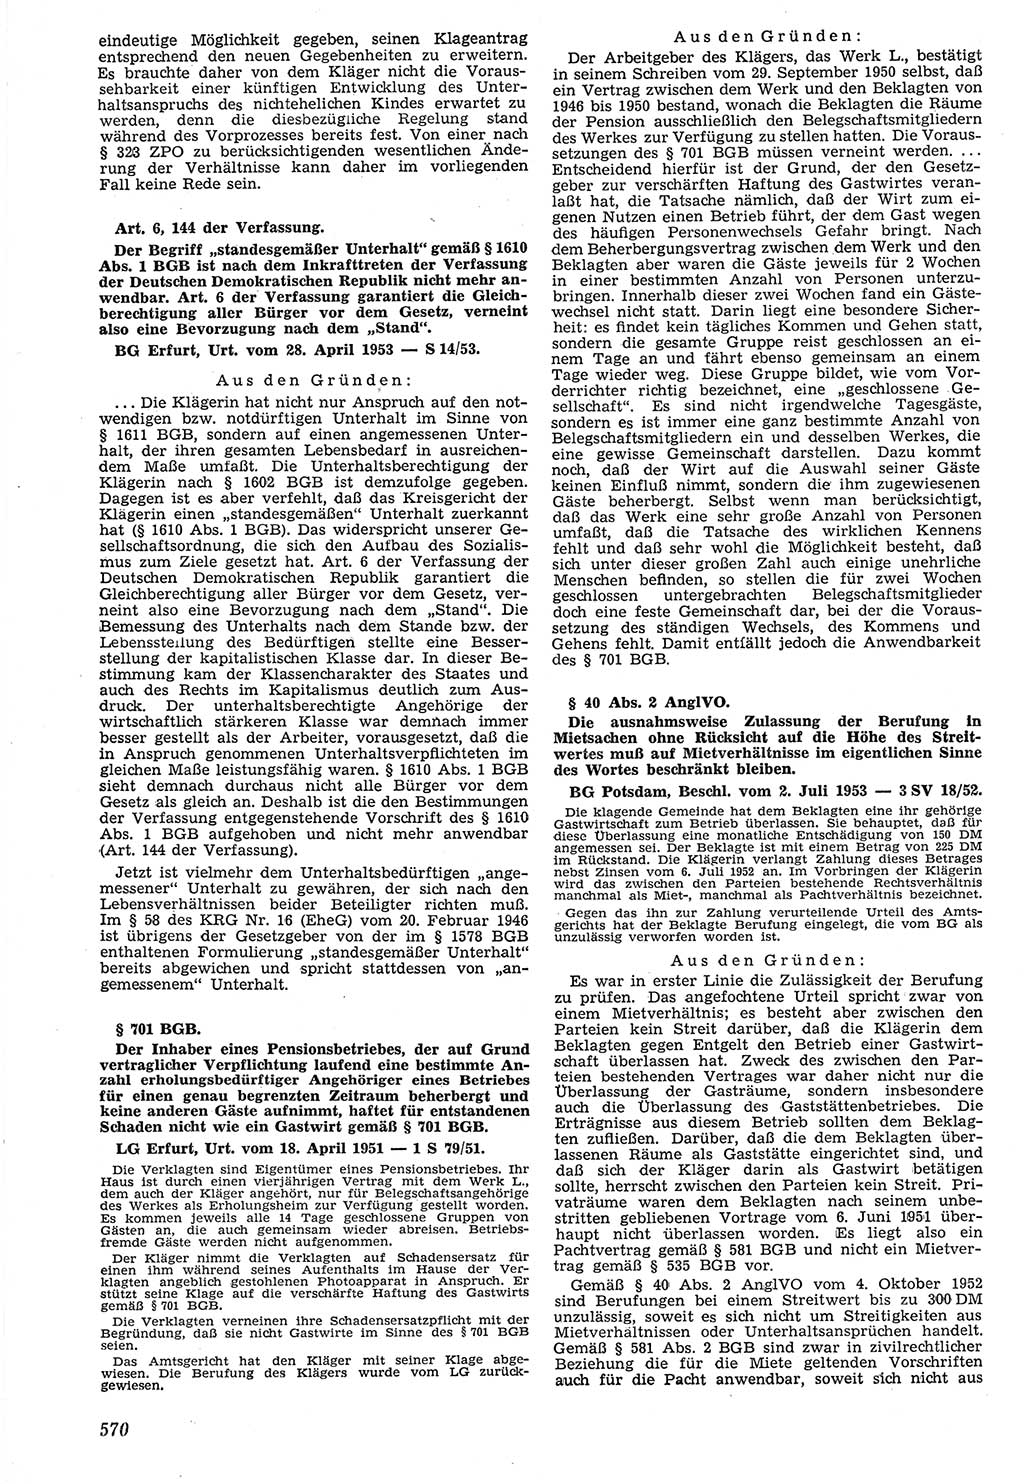 Neue Justiz (NJ), Zeitschrift für Recht und Rechtswissenschaft [Deutsche Demokratische Republik (DDR)], 7. Jahrgang 1953, Seite 570 (NJ DDR 1953, S. 570)